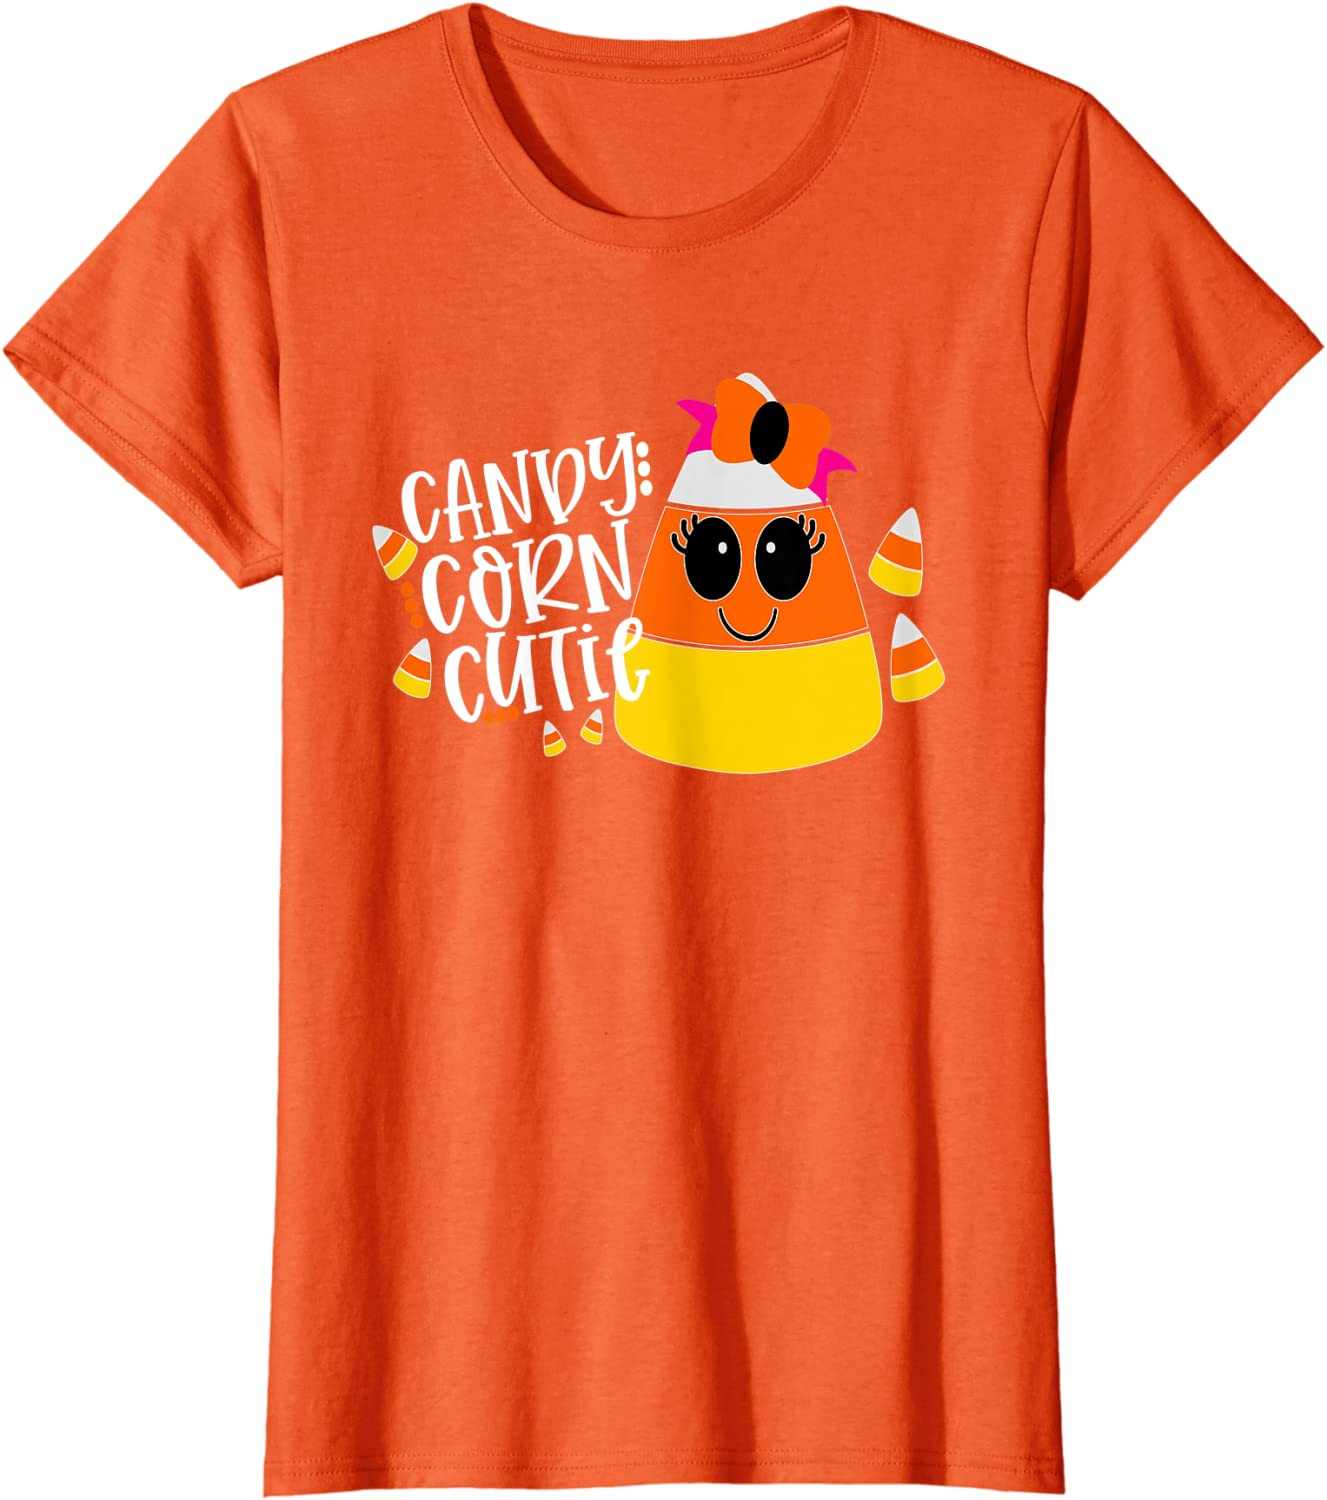 Candy Corn Cutie Halloween T-Shirt